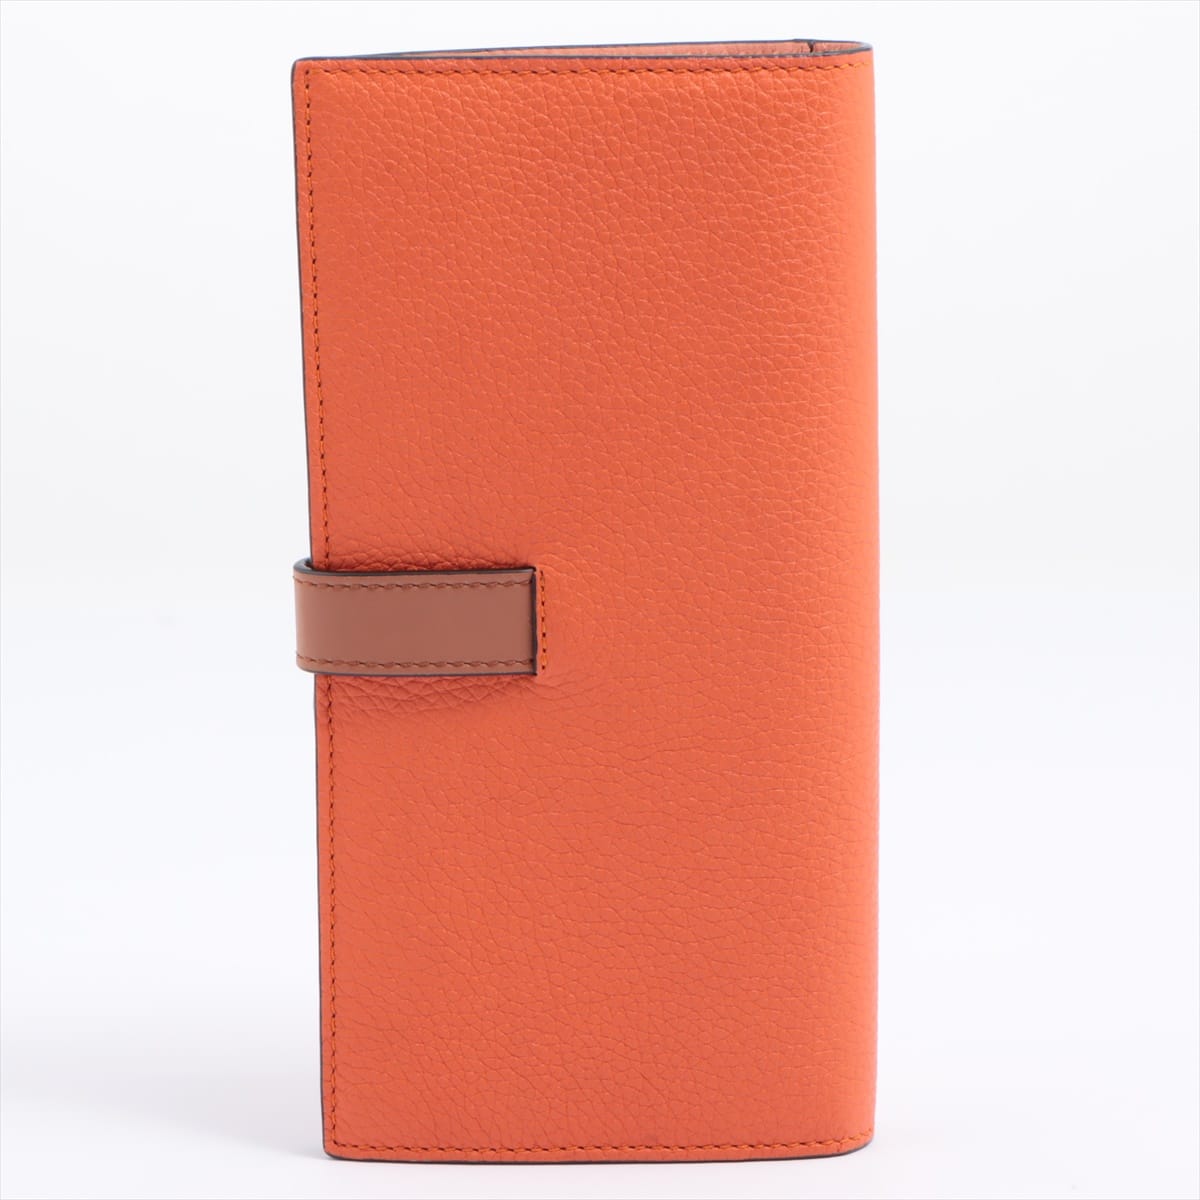 Loewe LARGE VERTICAL WALLET Leather Orange